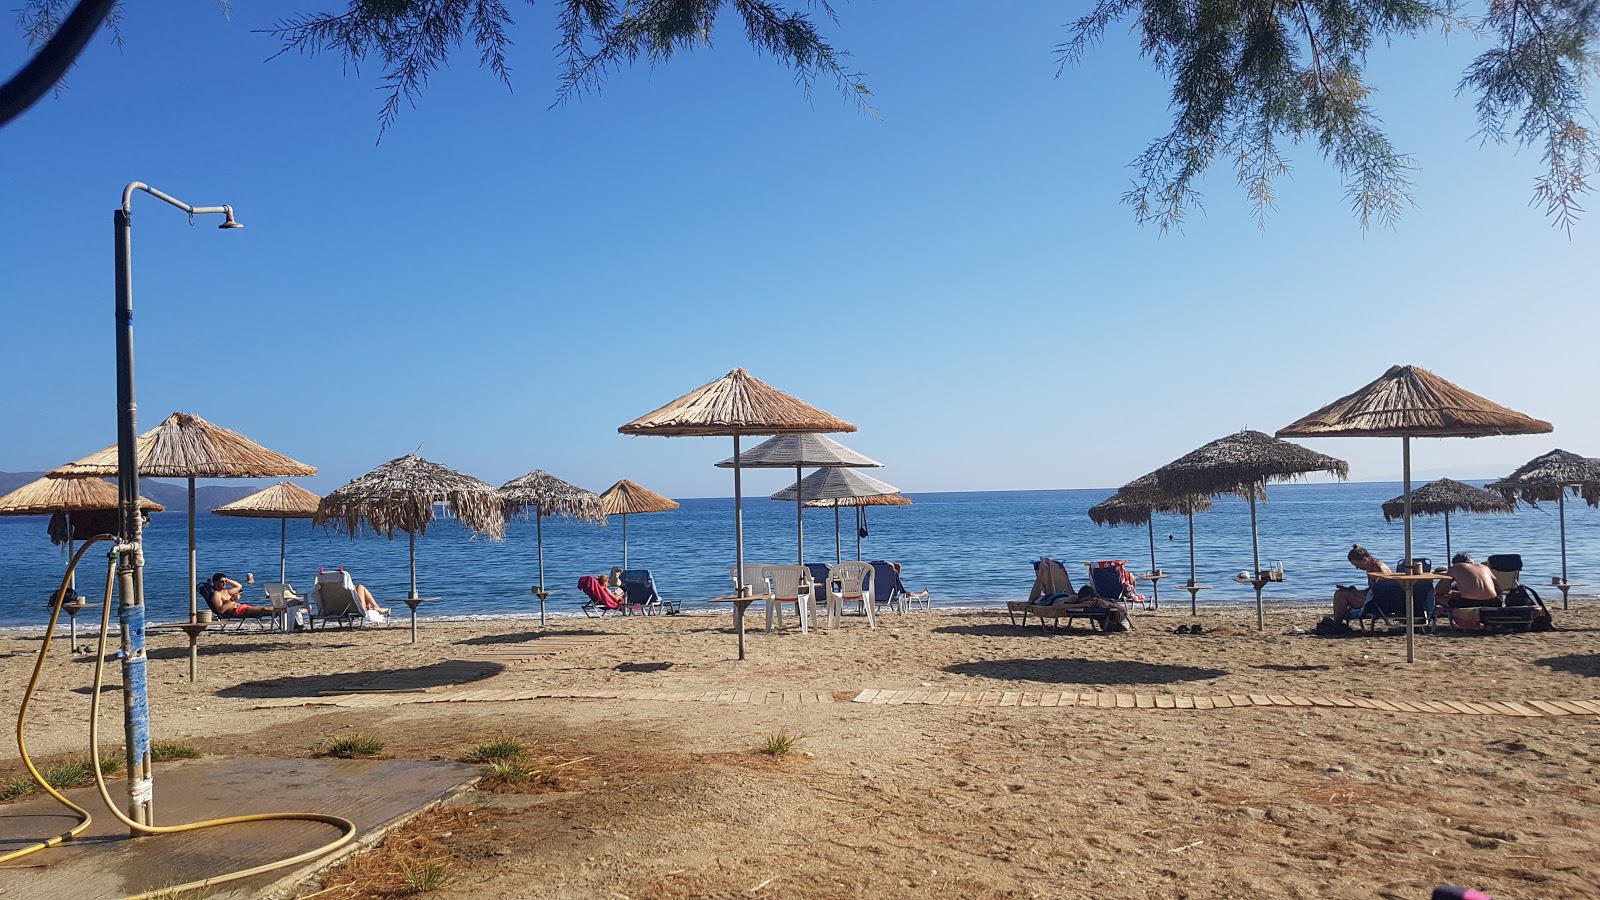 Fotografie cu Gallida Beach - locul popular printre cunoscătorii de relaxare